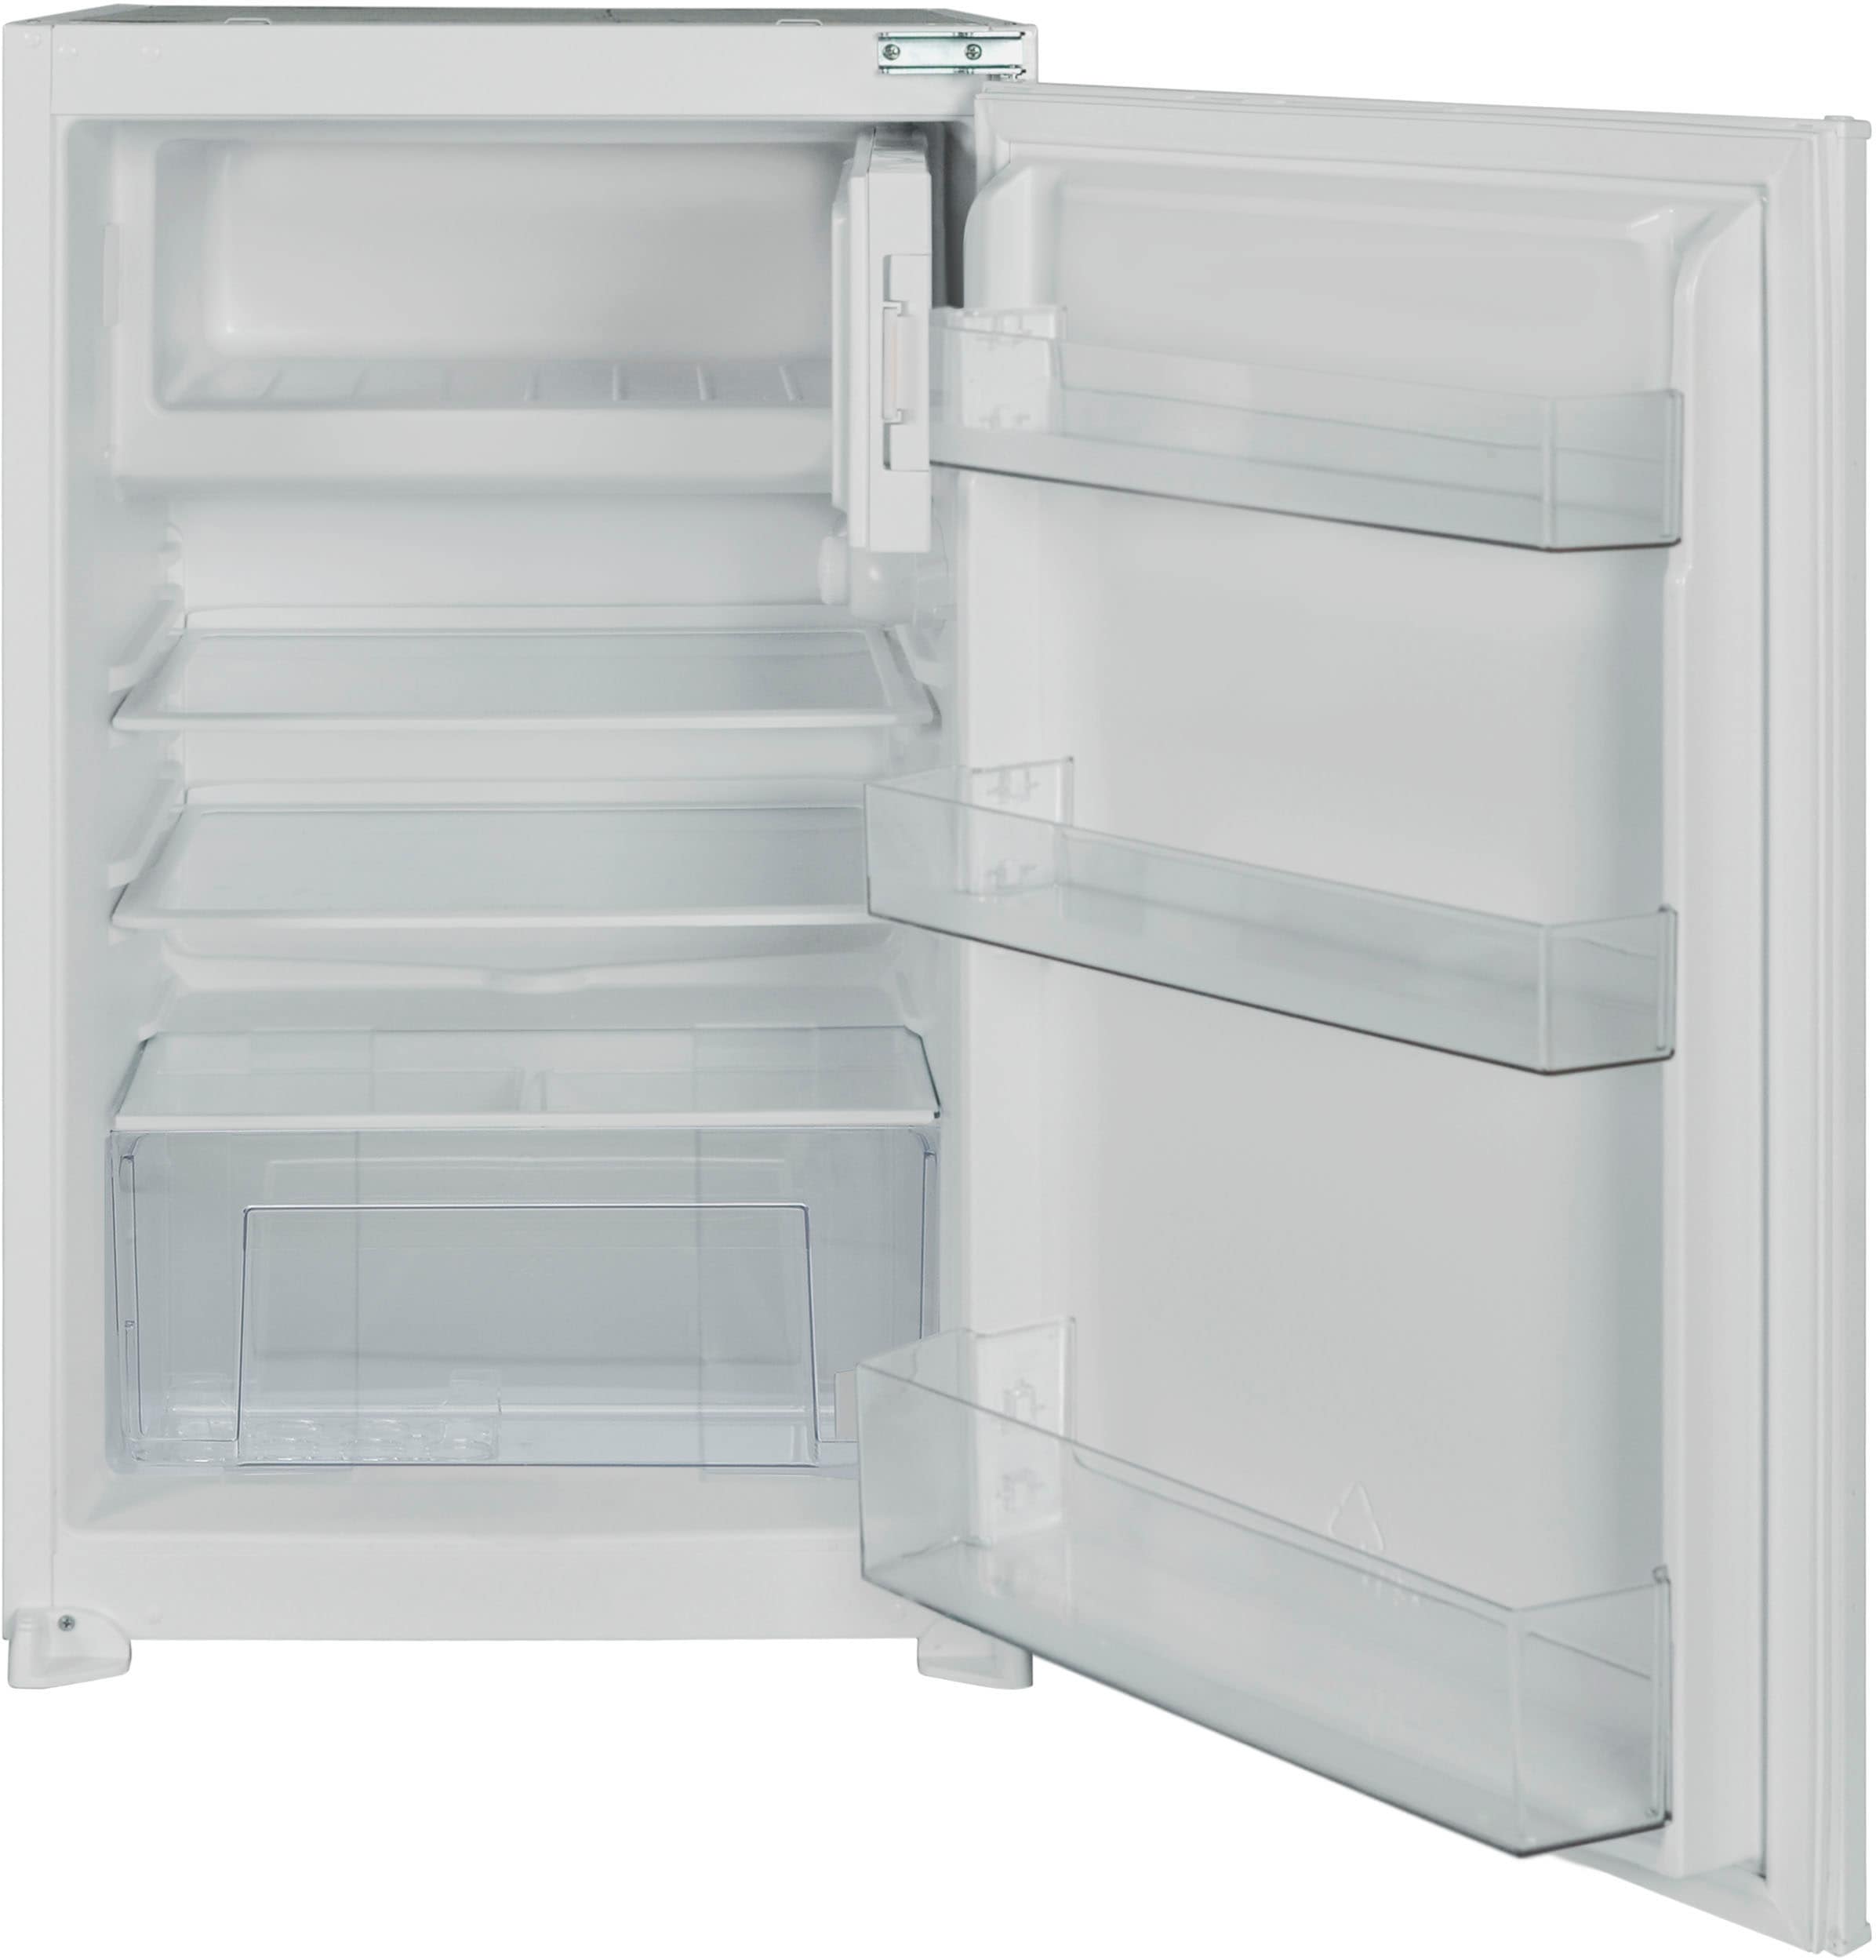 Flex-Well Küche »Wito«, Gesamtbreite 160 cm, mit Einbau-Kühlschrank, Kochfeld und Spüle etc.